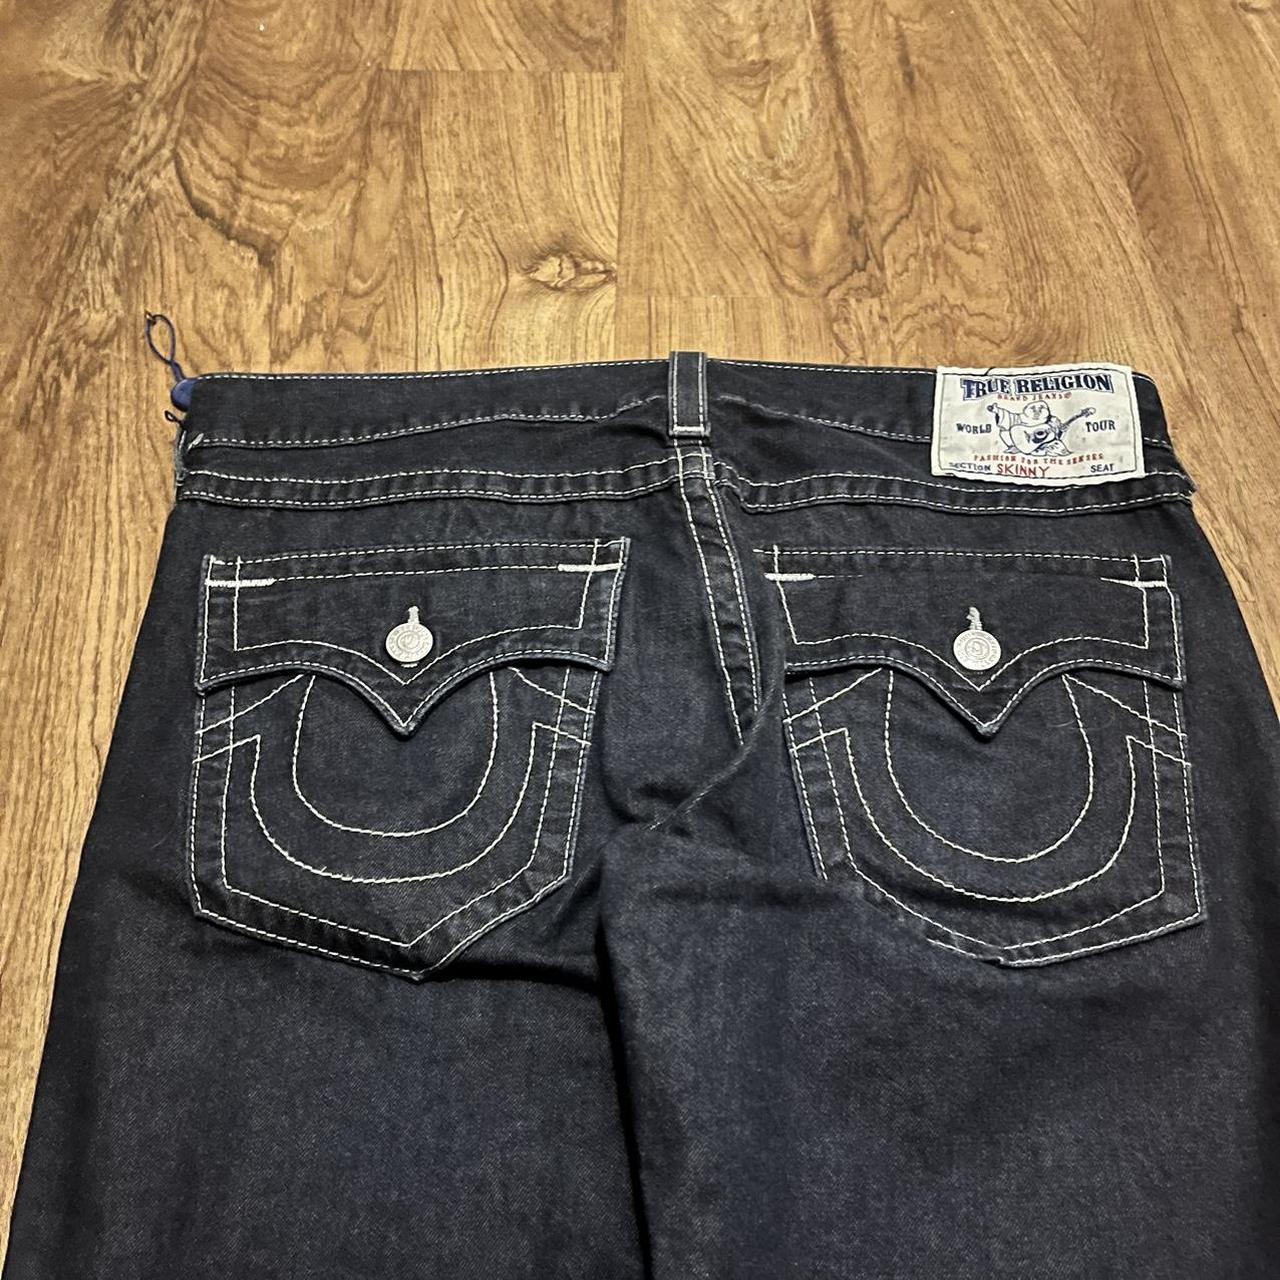 true religion skinny jeans 38X32 leg opening 8 in... - Depop